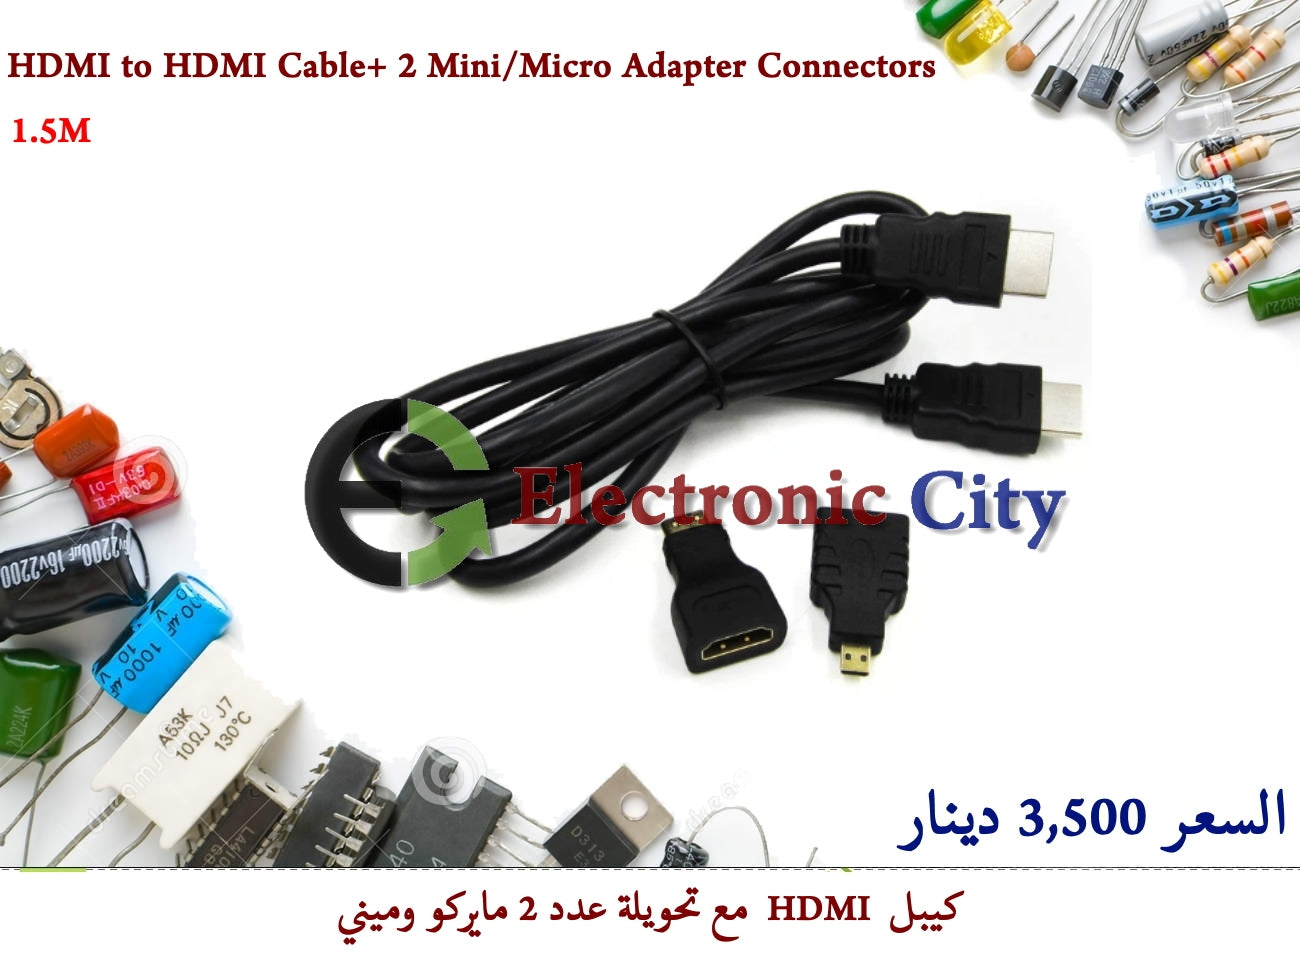 HDMI to HDMI Cable + 2 Mini-Micro Adapter Connectors